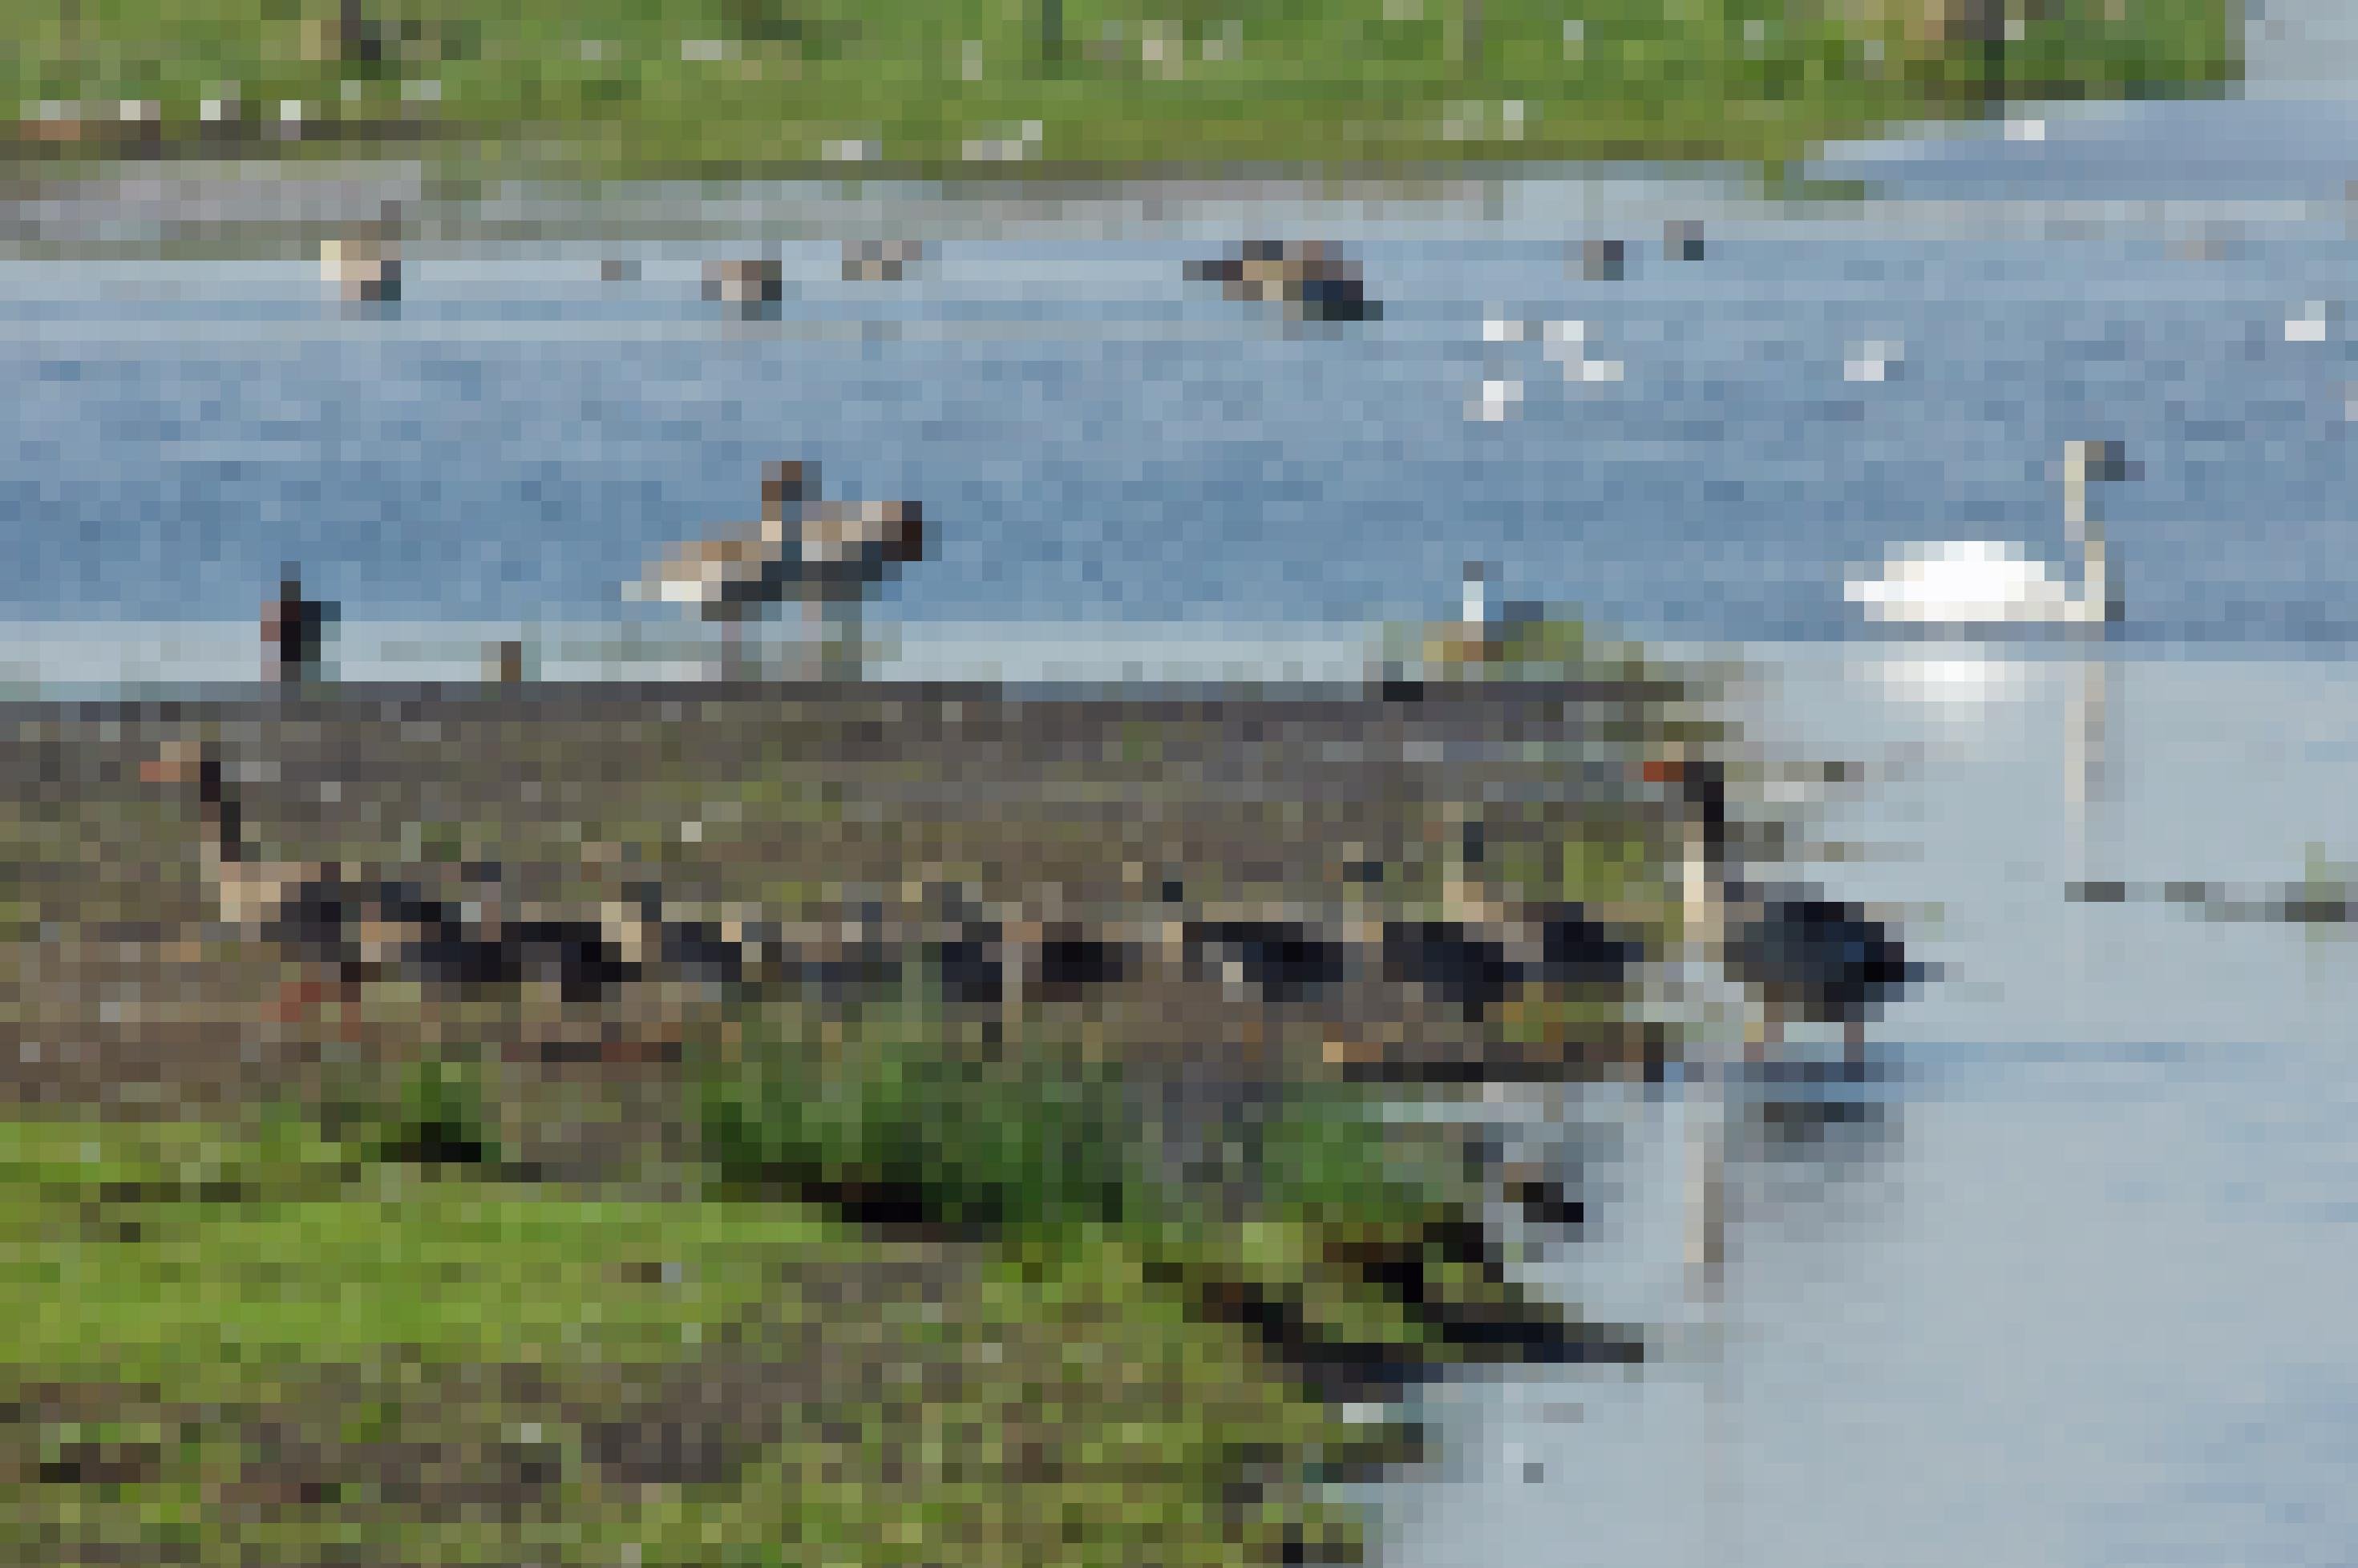 Ein Grauganspaar mit zehn Gösseln, sie kommen gerade im Gänsemarsch aus dem Wasser. Graugänse haben in den letzten Jahren am Dümmer stark zugenommen